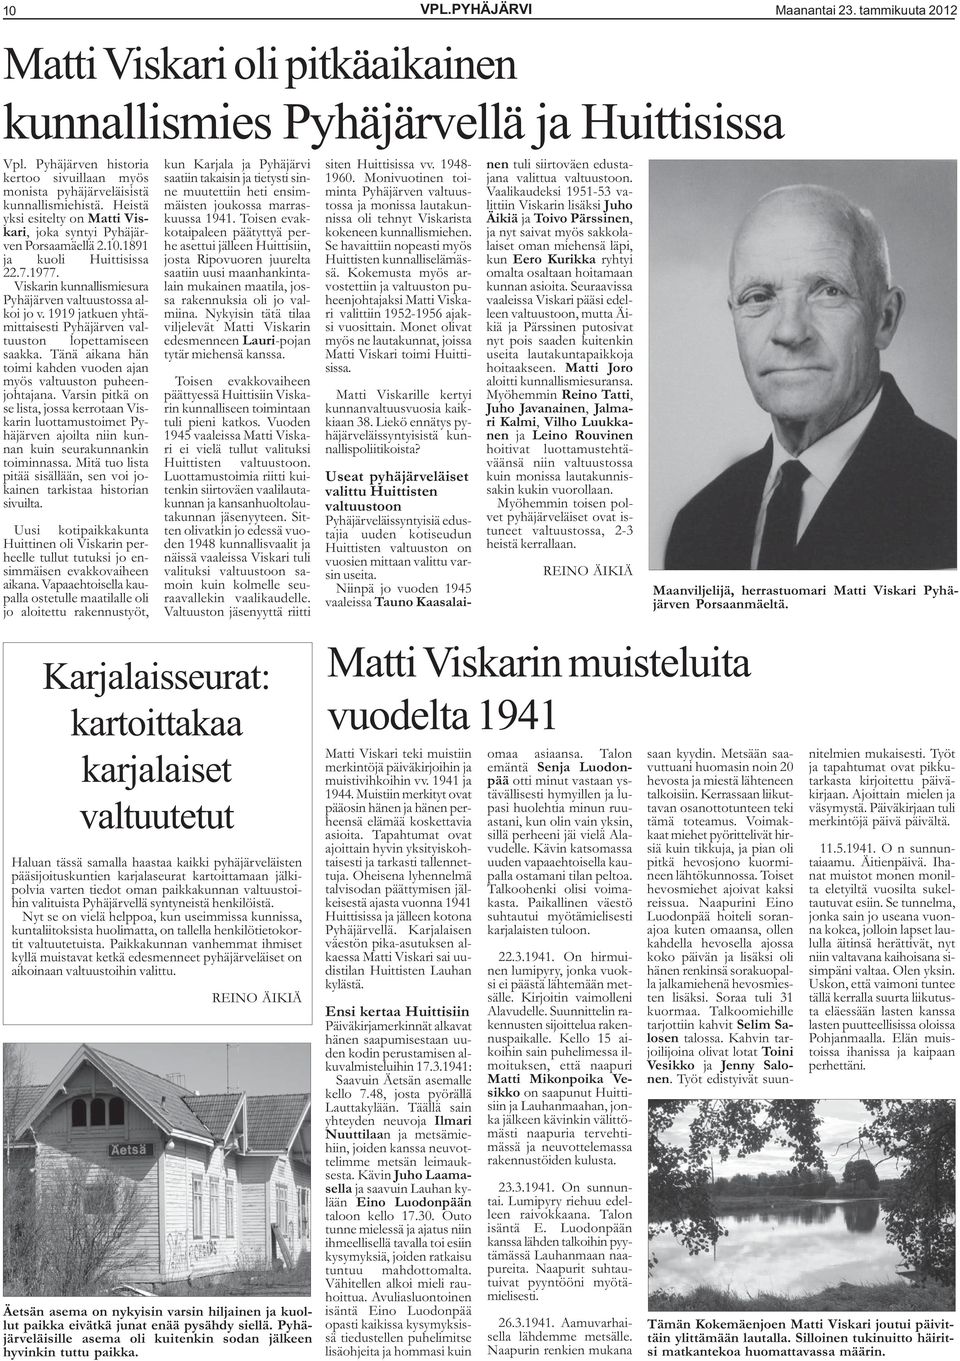 1977. Viskarin kunnallismiesura Pyhäjärven valtuustossa alkoi jo v. 1919 jatkuen yhtämittaisesti Pyhäjärven valtuuston lopettamiseen saakka.